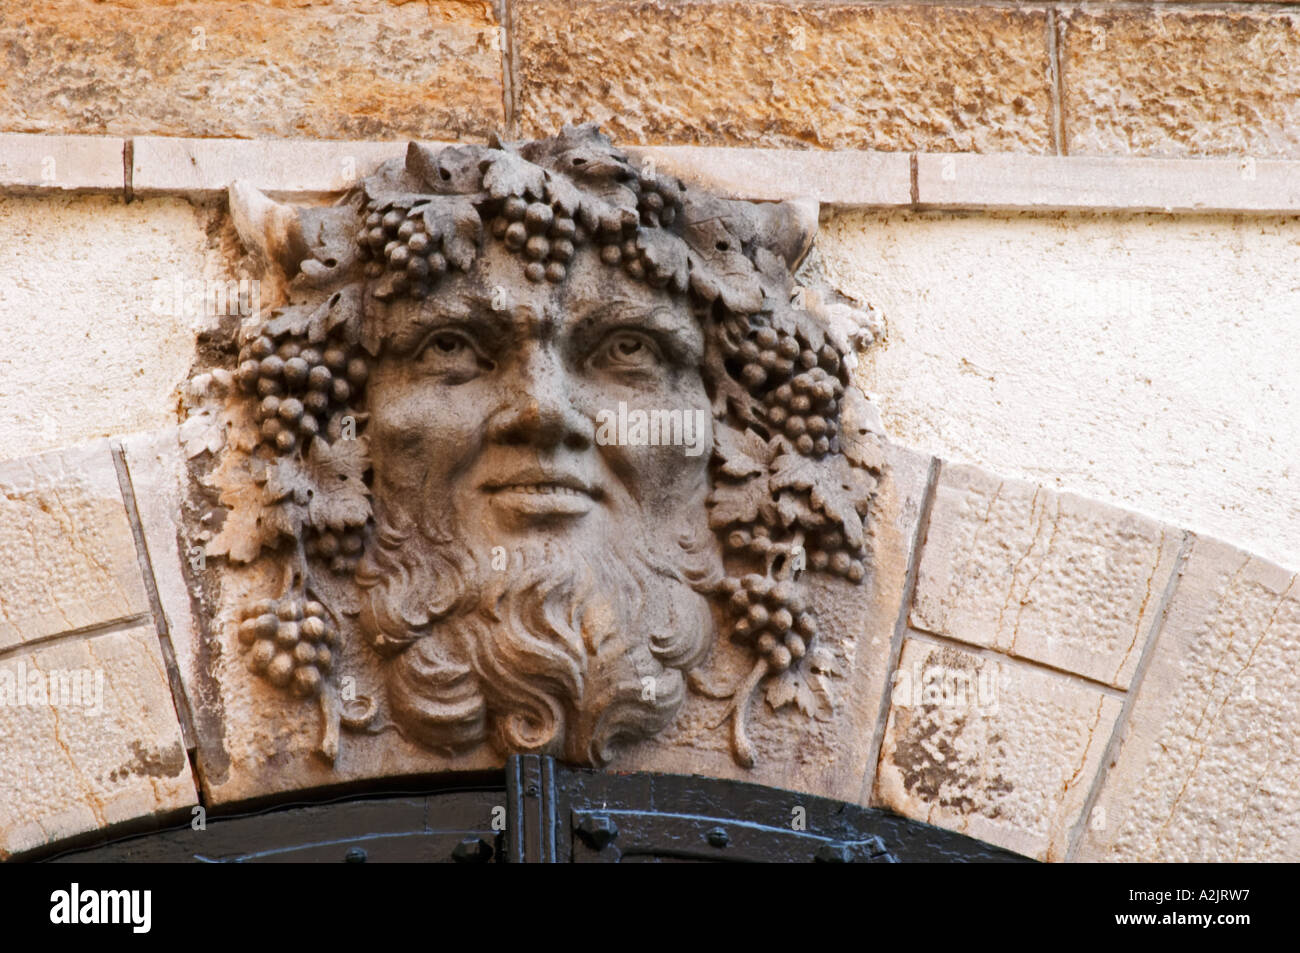 Una escultura de baccus bacchus baccus con barba y racimos de uvas y hojas de vid en el cabello como la lápida clave keystone Foto de stock